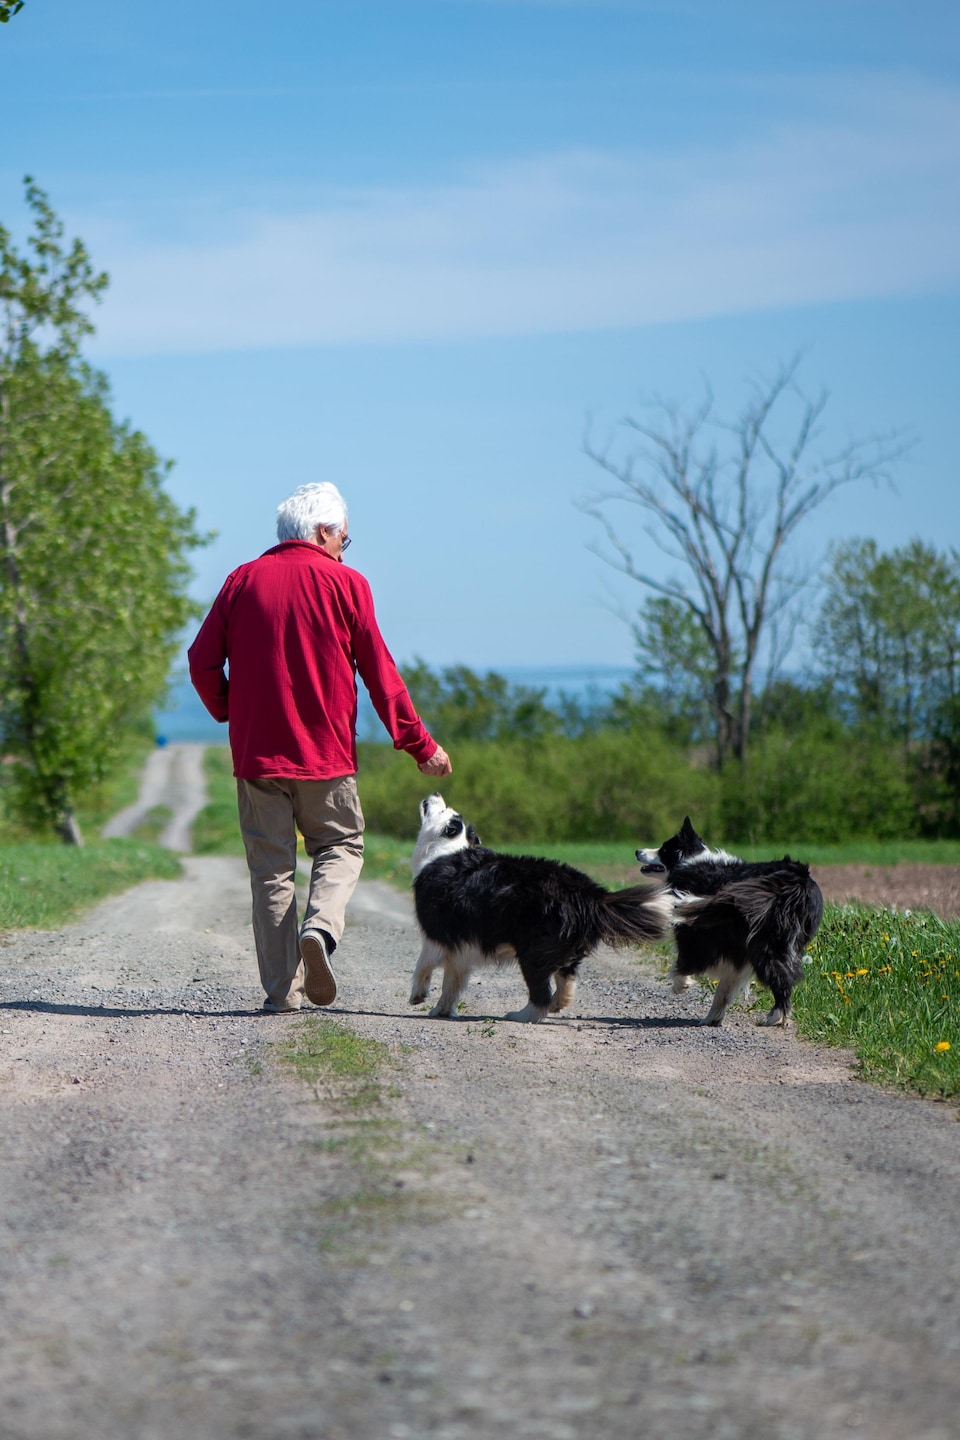 Un homme marche avec deux chiens dans une petite route de campagne. 